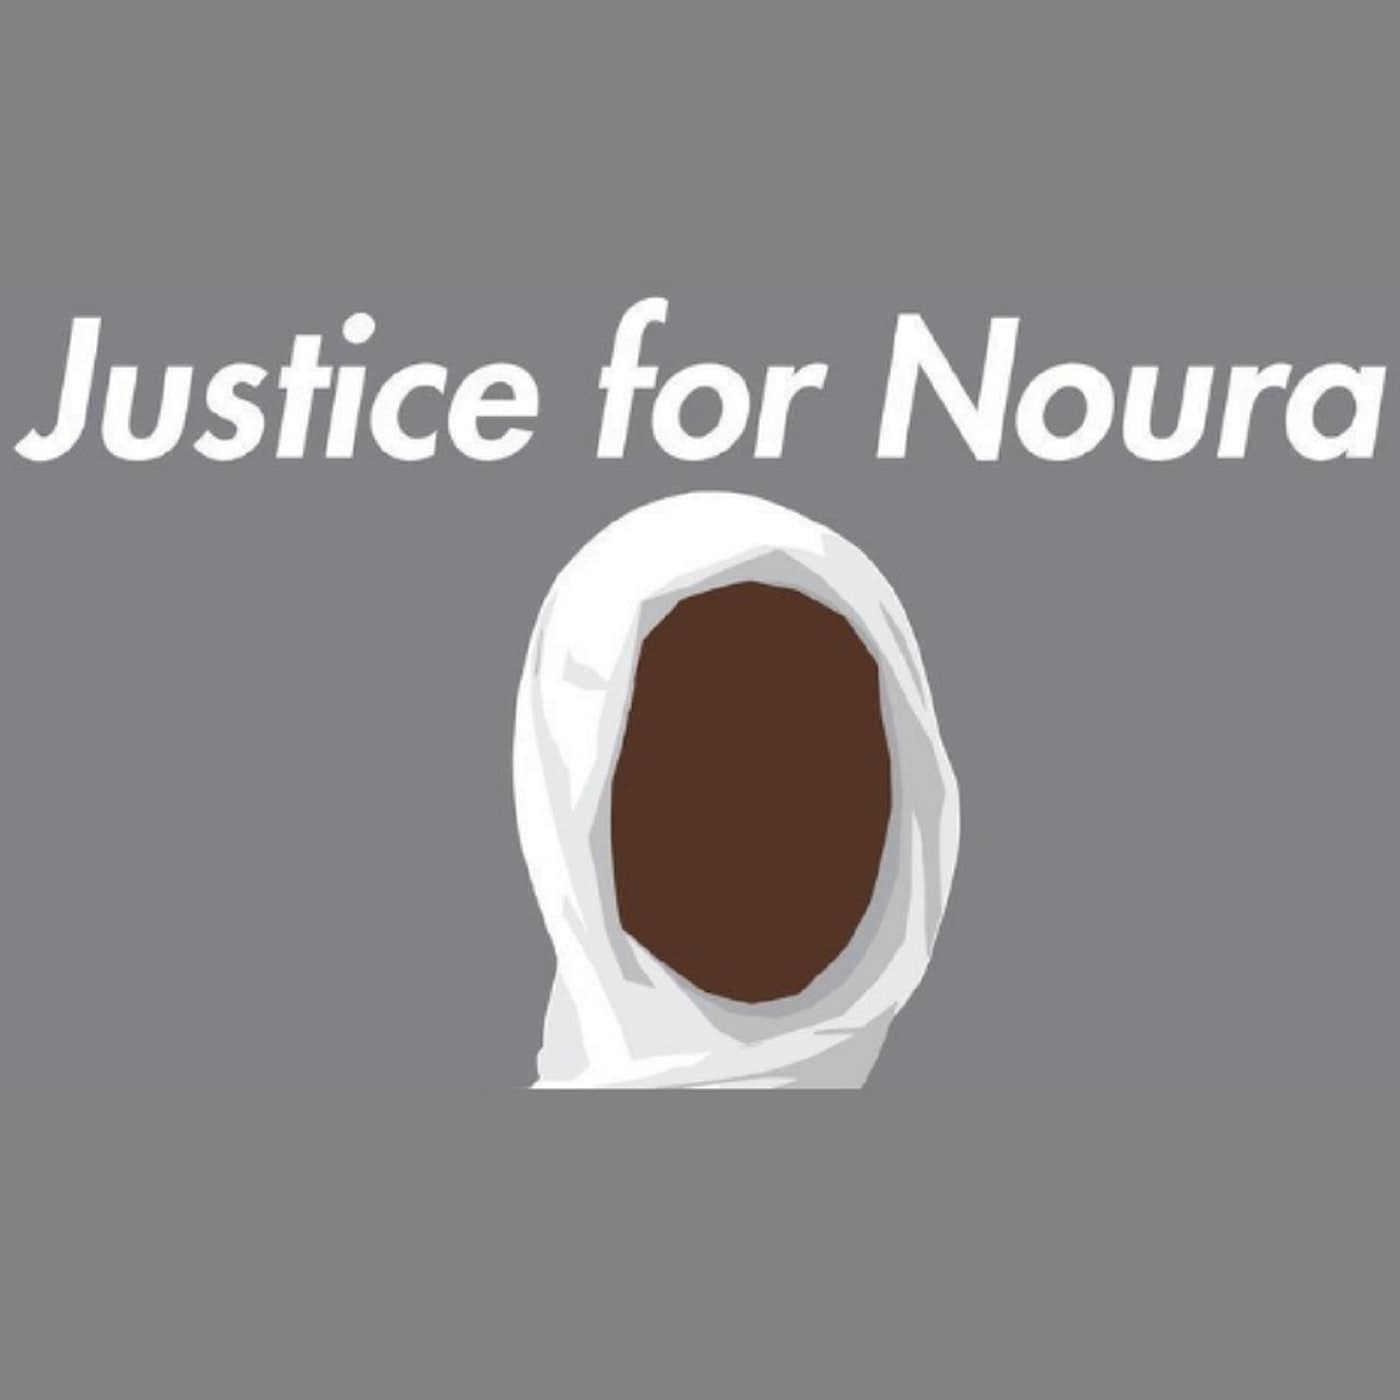 Ze vermoordde haar man toen hij haar verkrachtte. Nu krijgt Noura (19) de doodstraf